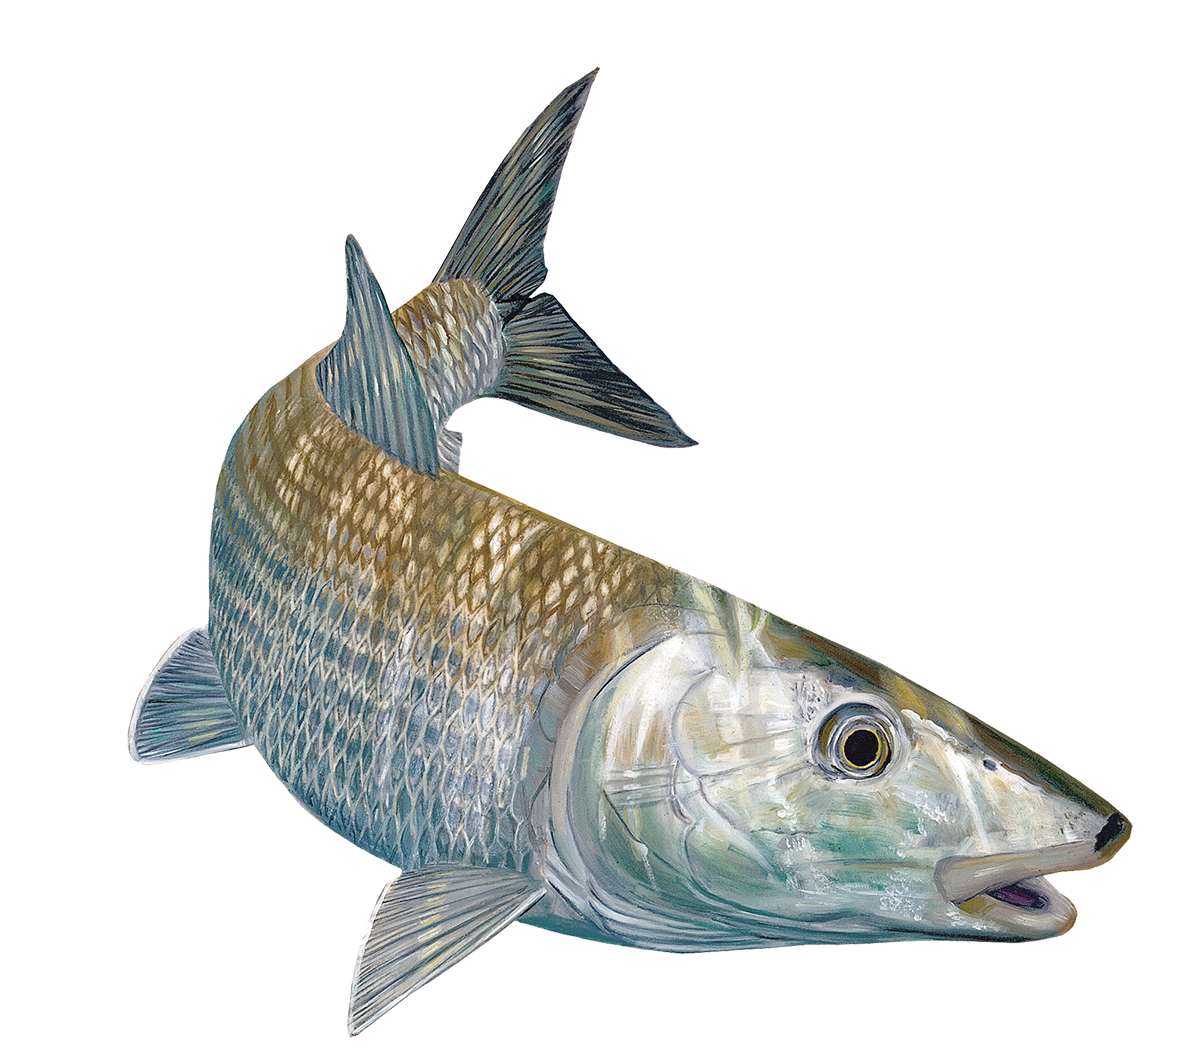 Bass Fishing Sticker Rude Awakening Bass Decal Randy McGovern Fish Art –  Skiff Life